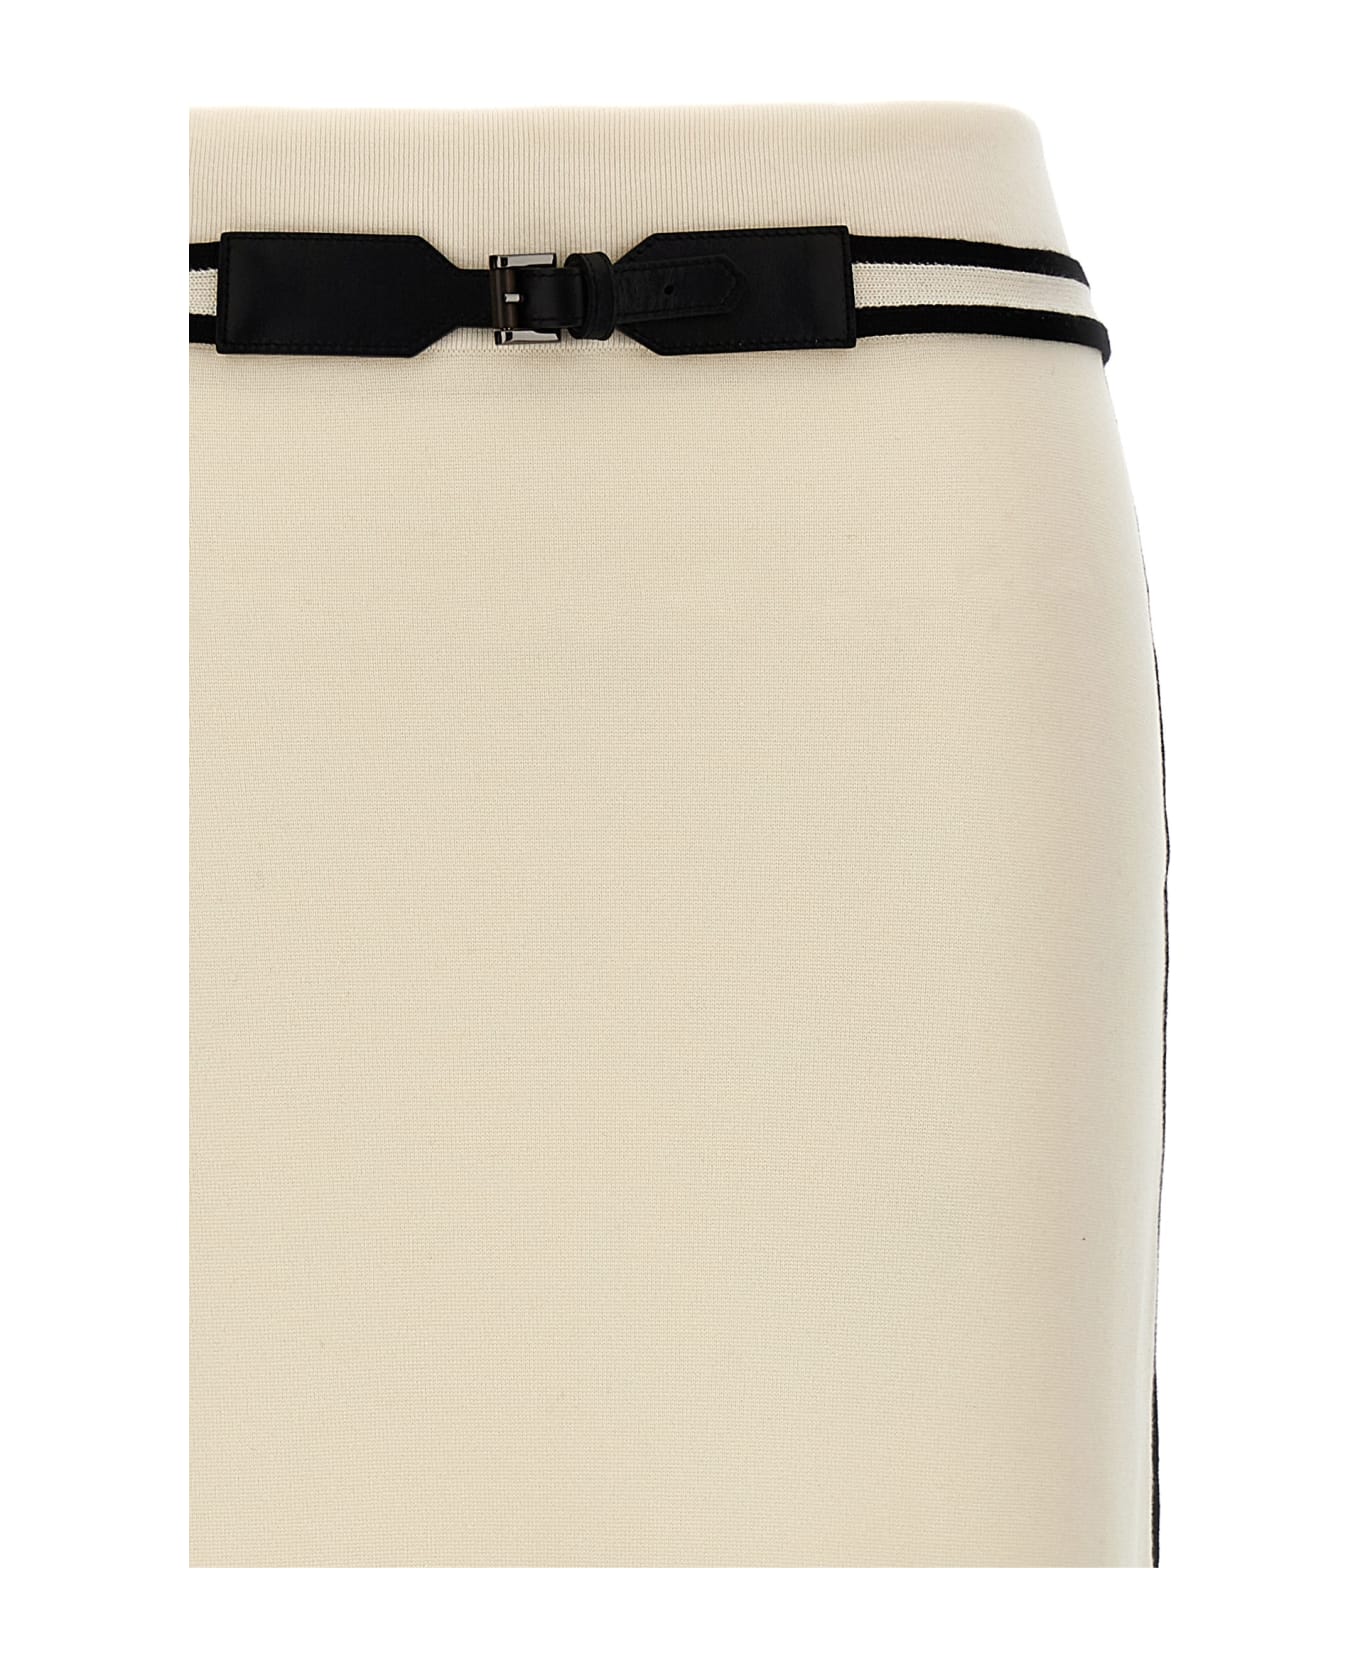 Max Mara 'ora' Skirt - White/Black